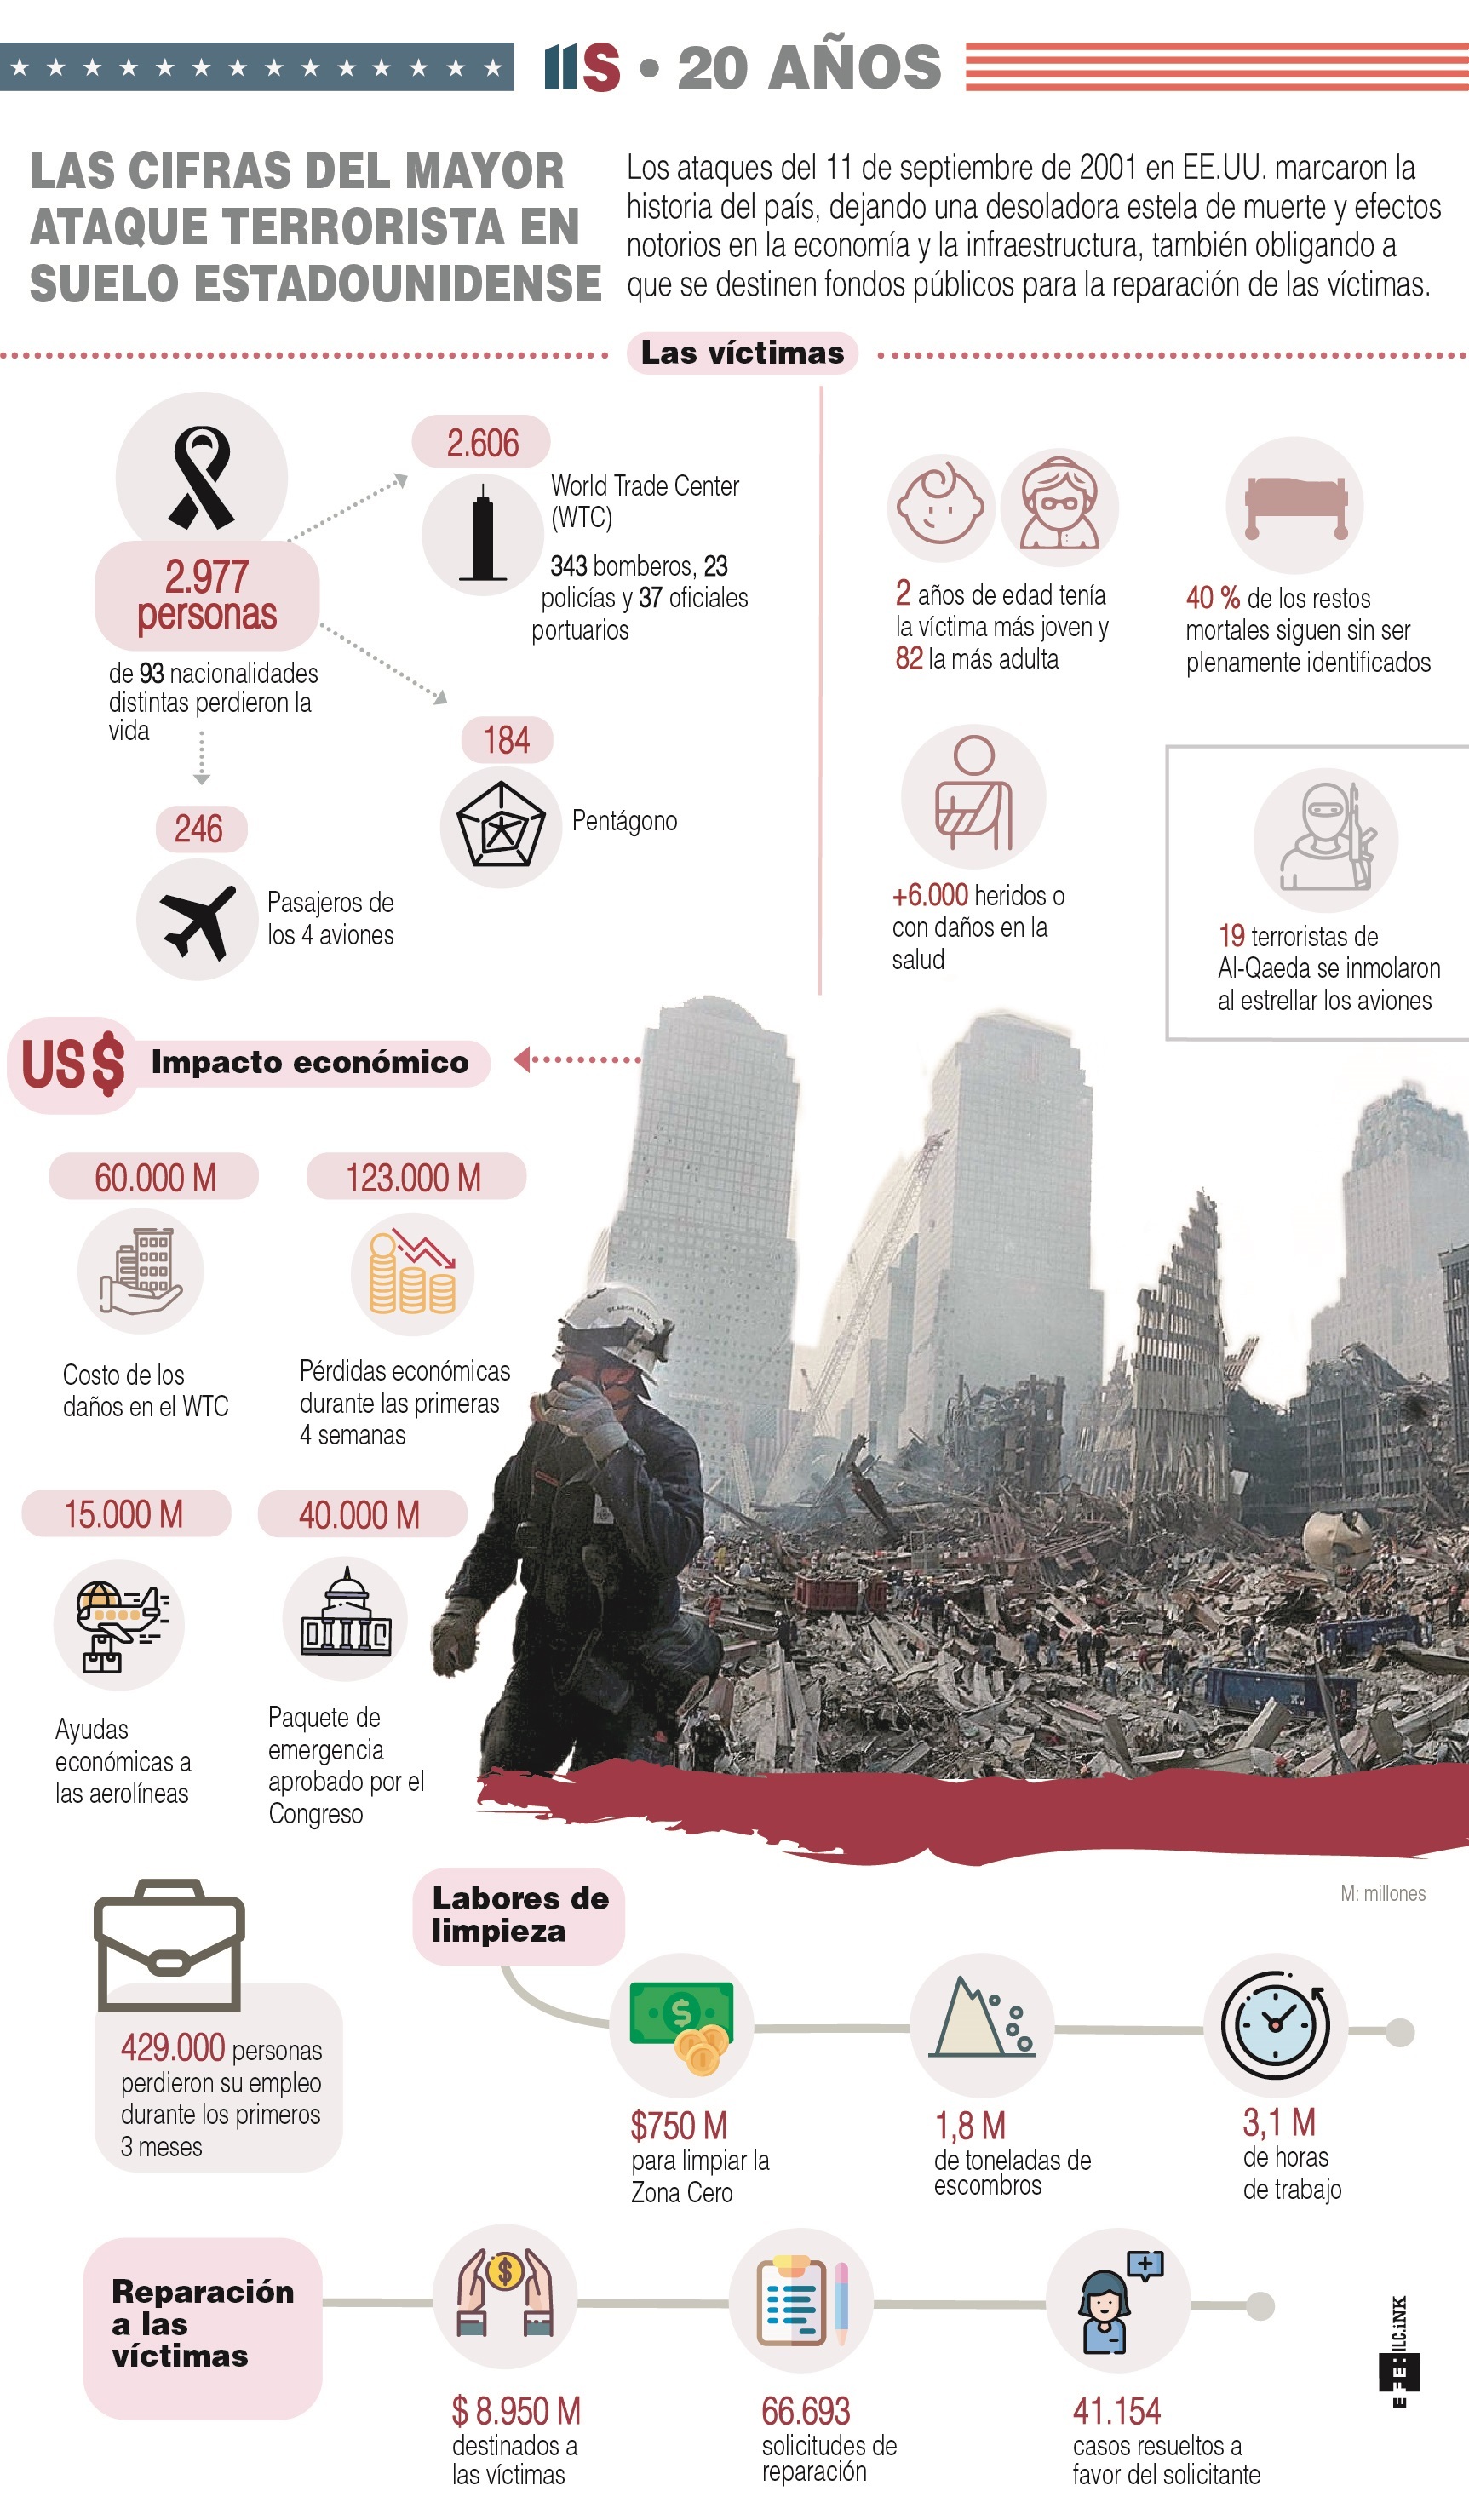 11S 20 años: Las cifras del mayor ataque terrorista en suelo estadounidense